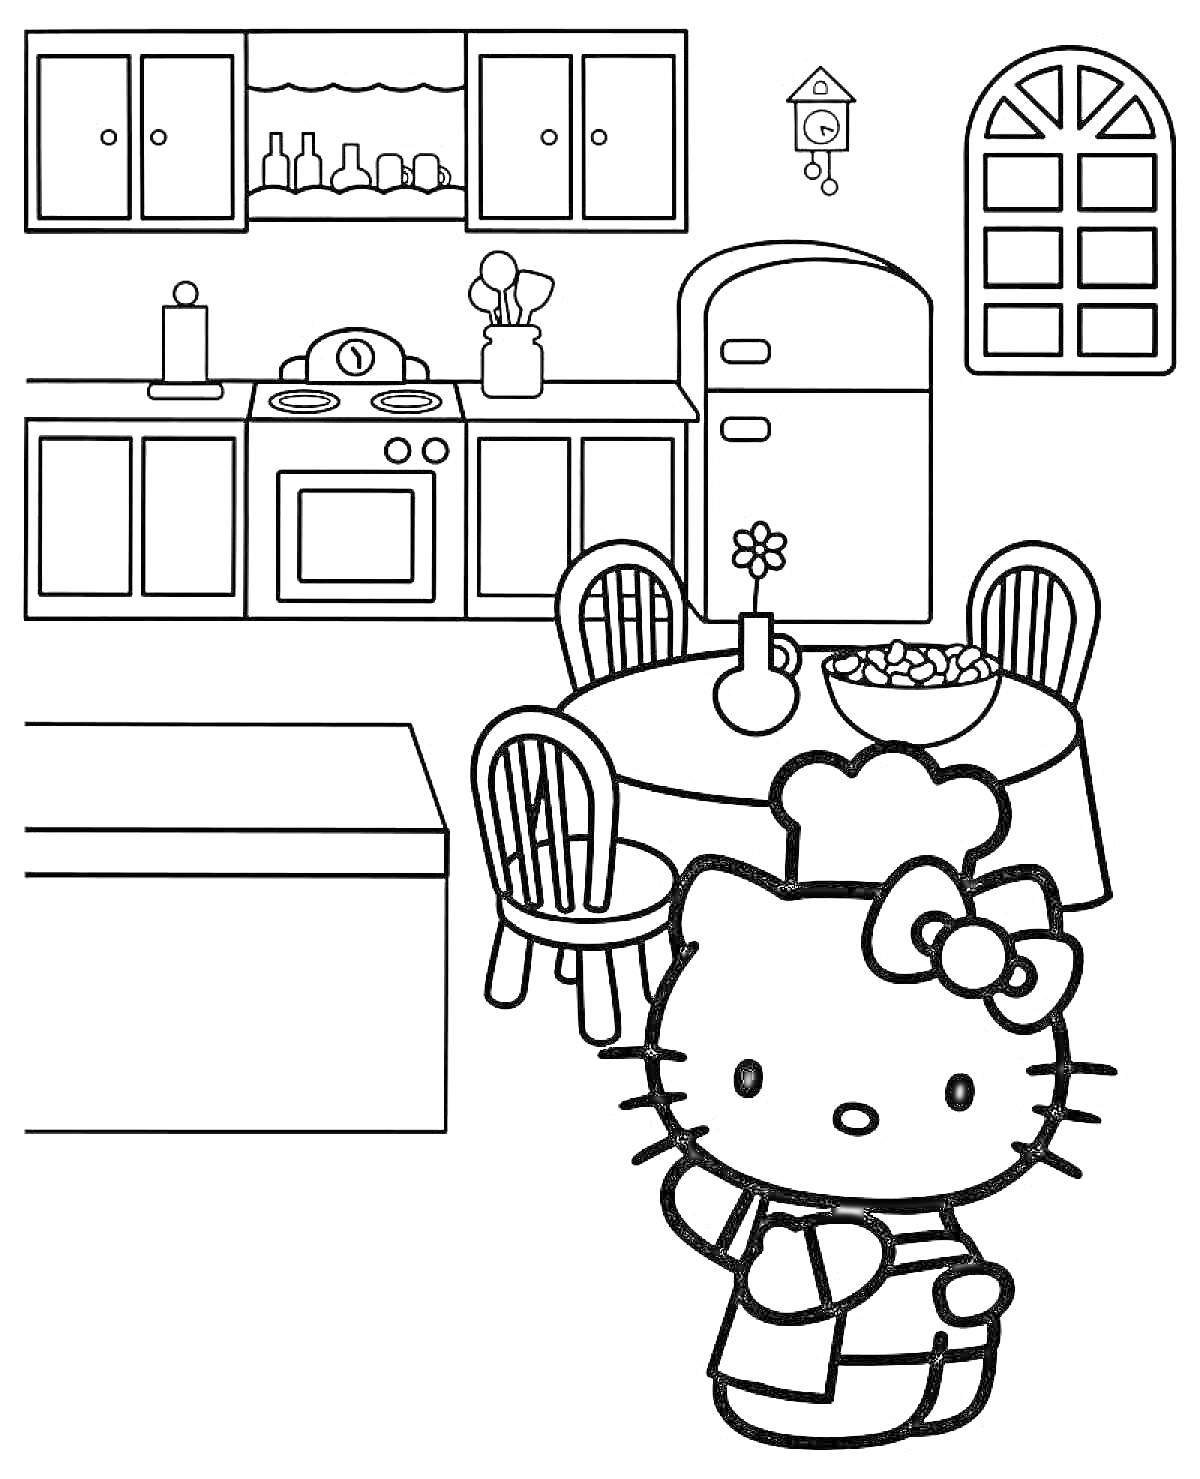 Кухня с Hello Kitty, холодильник, шкафчики, стол с фруктами, окно, часы с кукушкой, кастрюли, вазочка с цветком, столовые стулья, кошка в фартуке